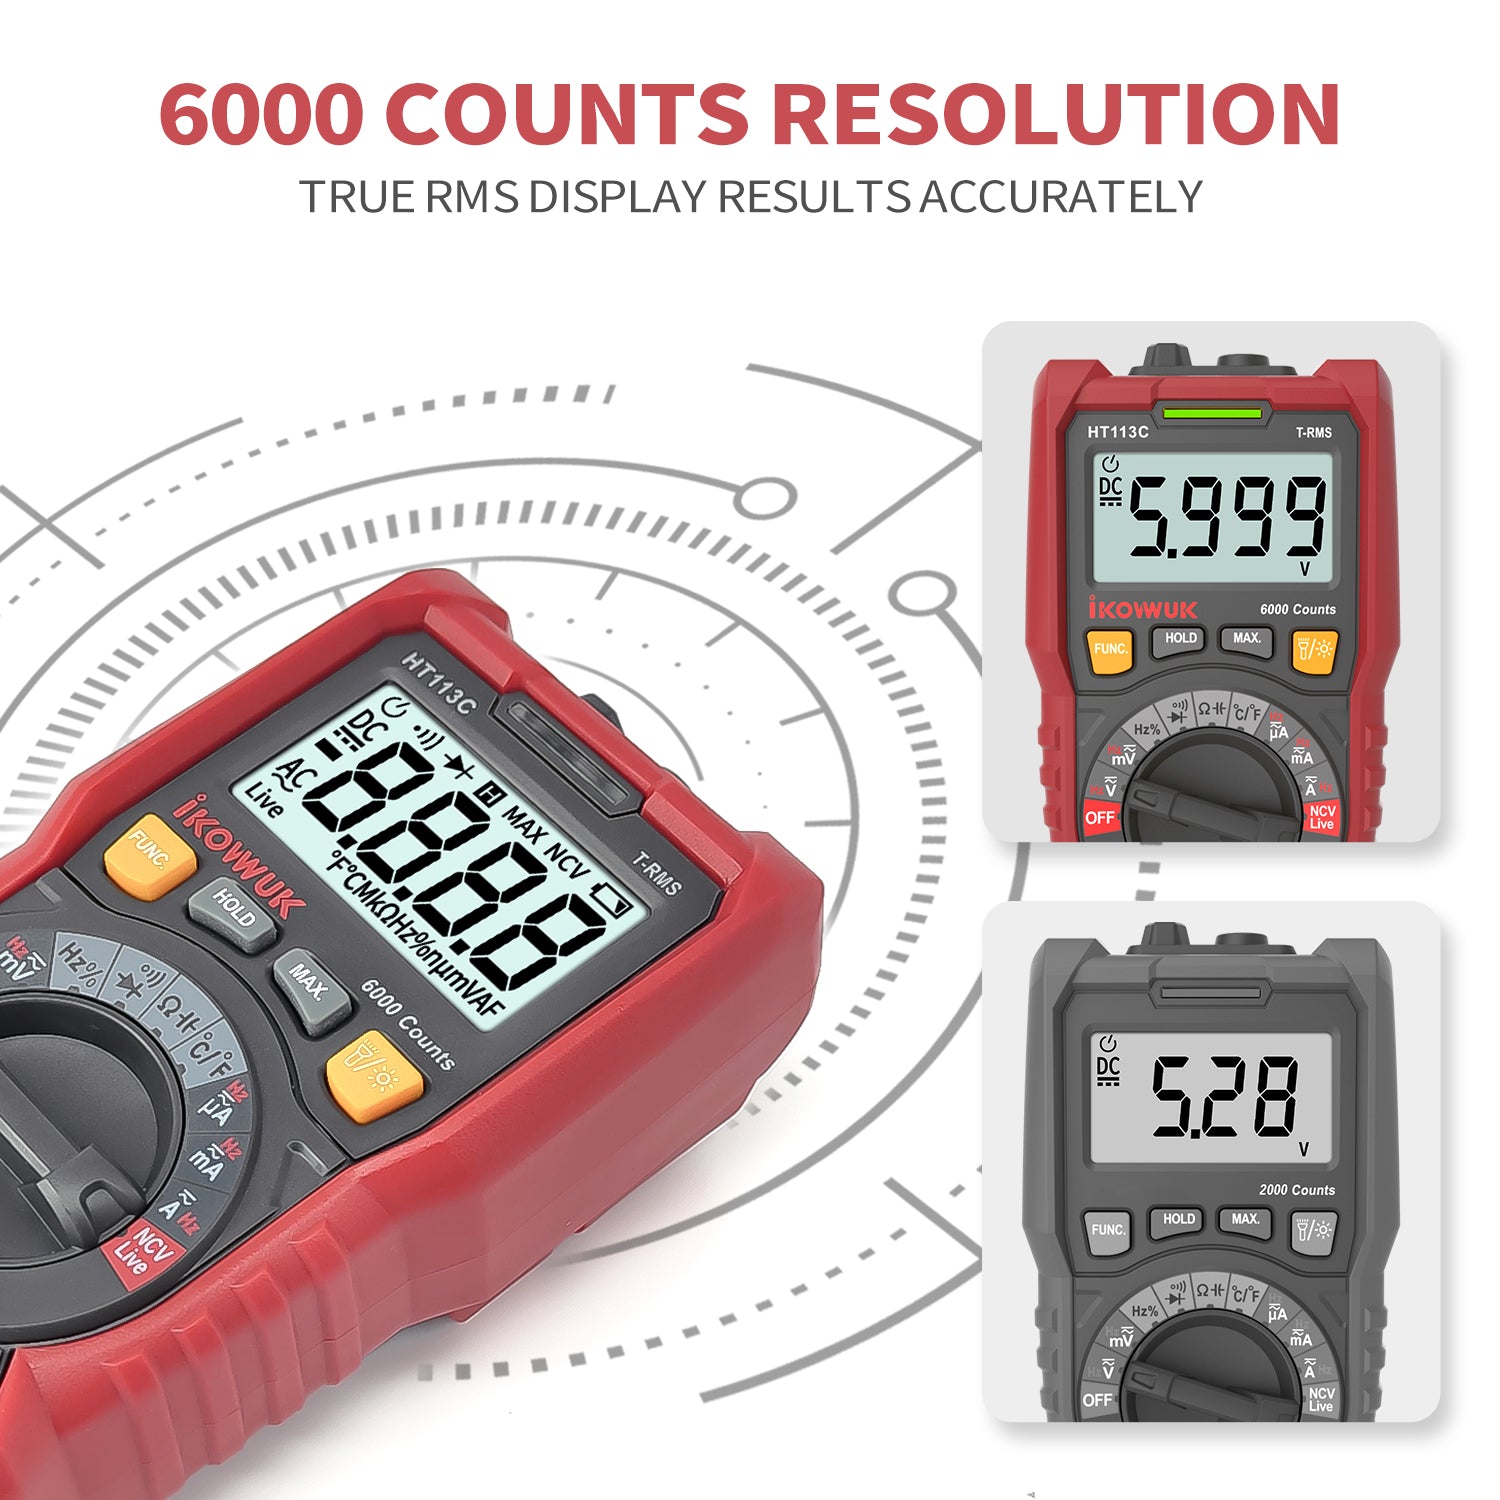 Ikovuwk デジタル マルチメーター TRMS 6000 カウント電圧計